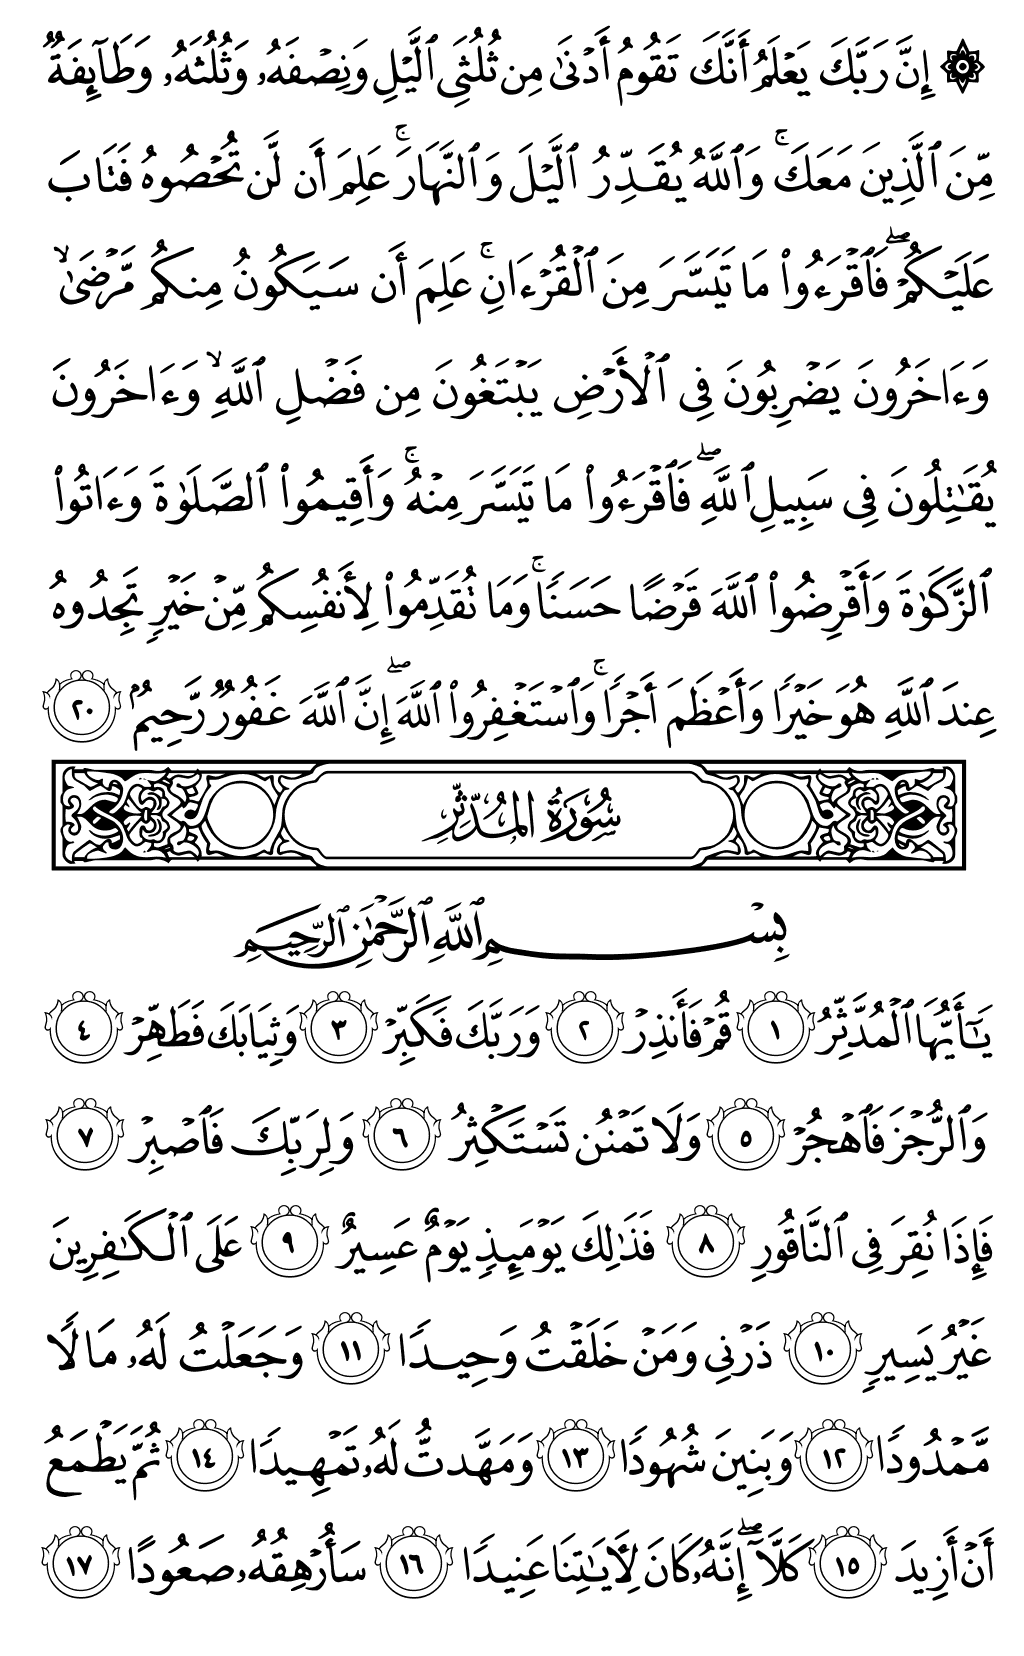 الصفحة رقم 575 من القرآن الكريم